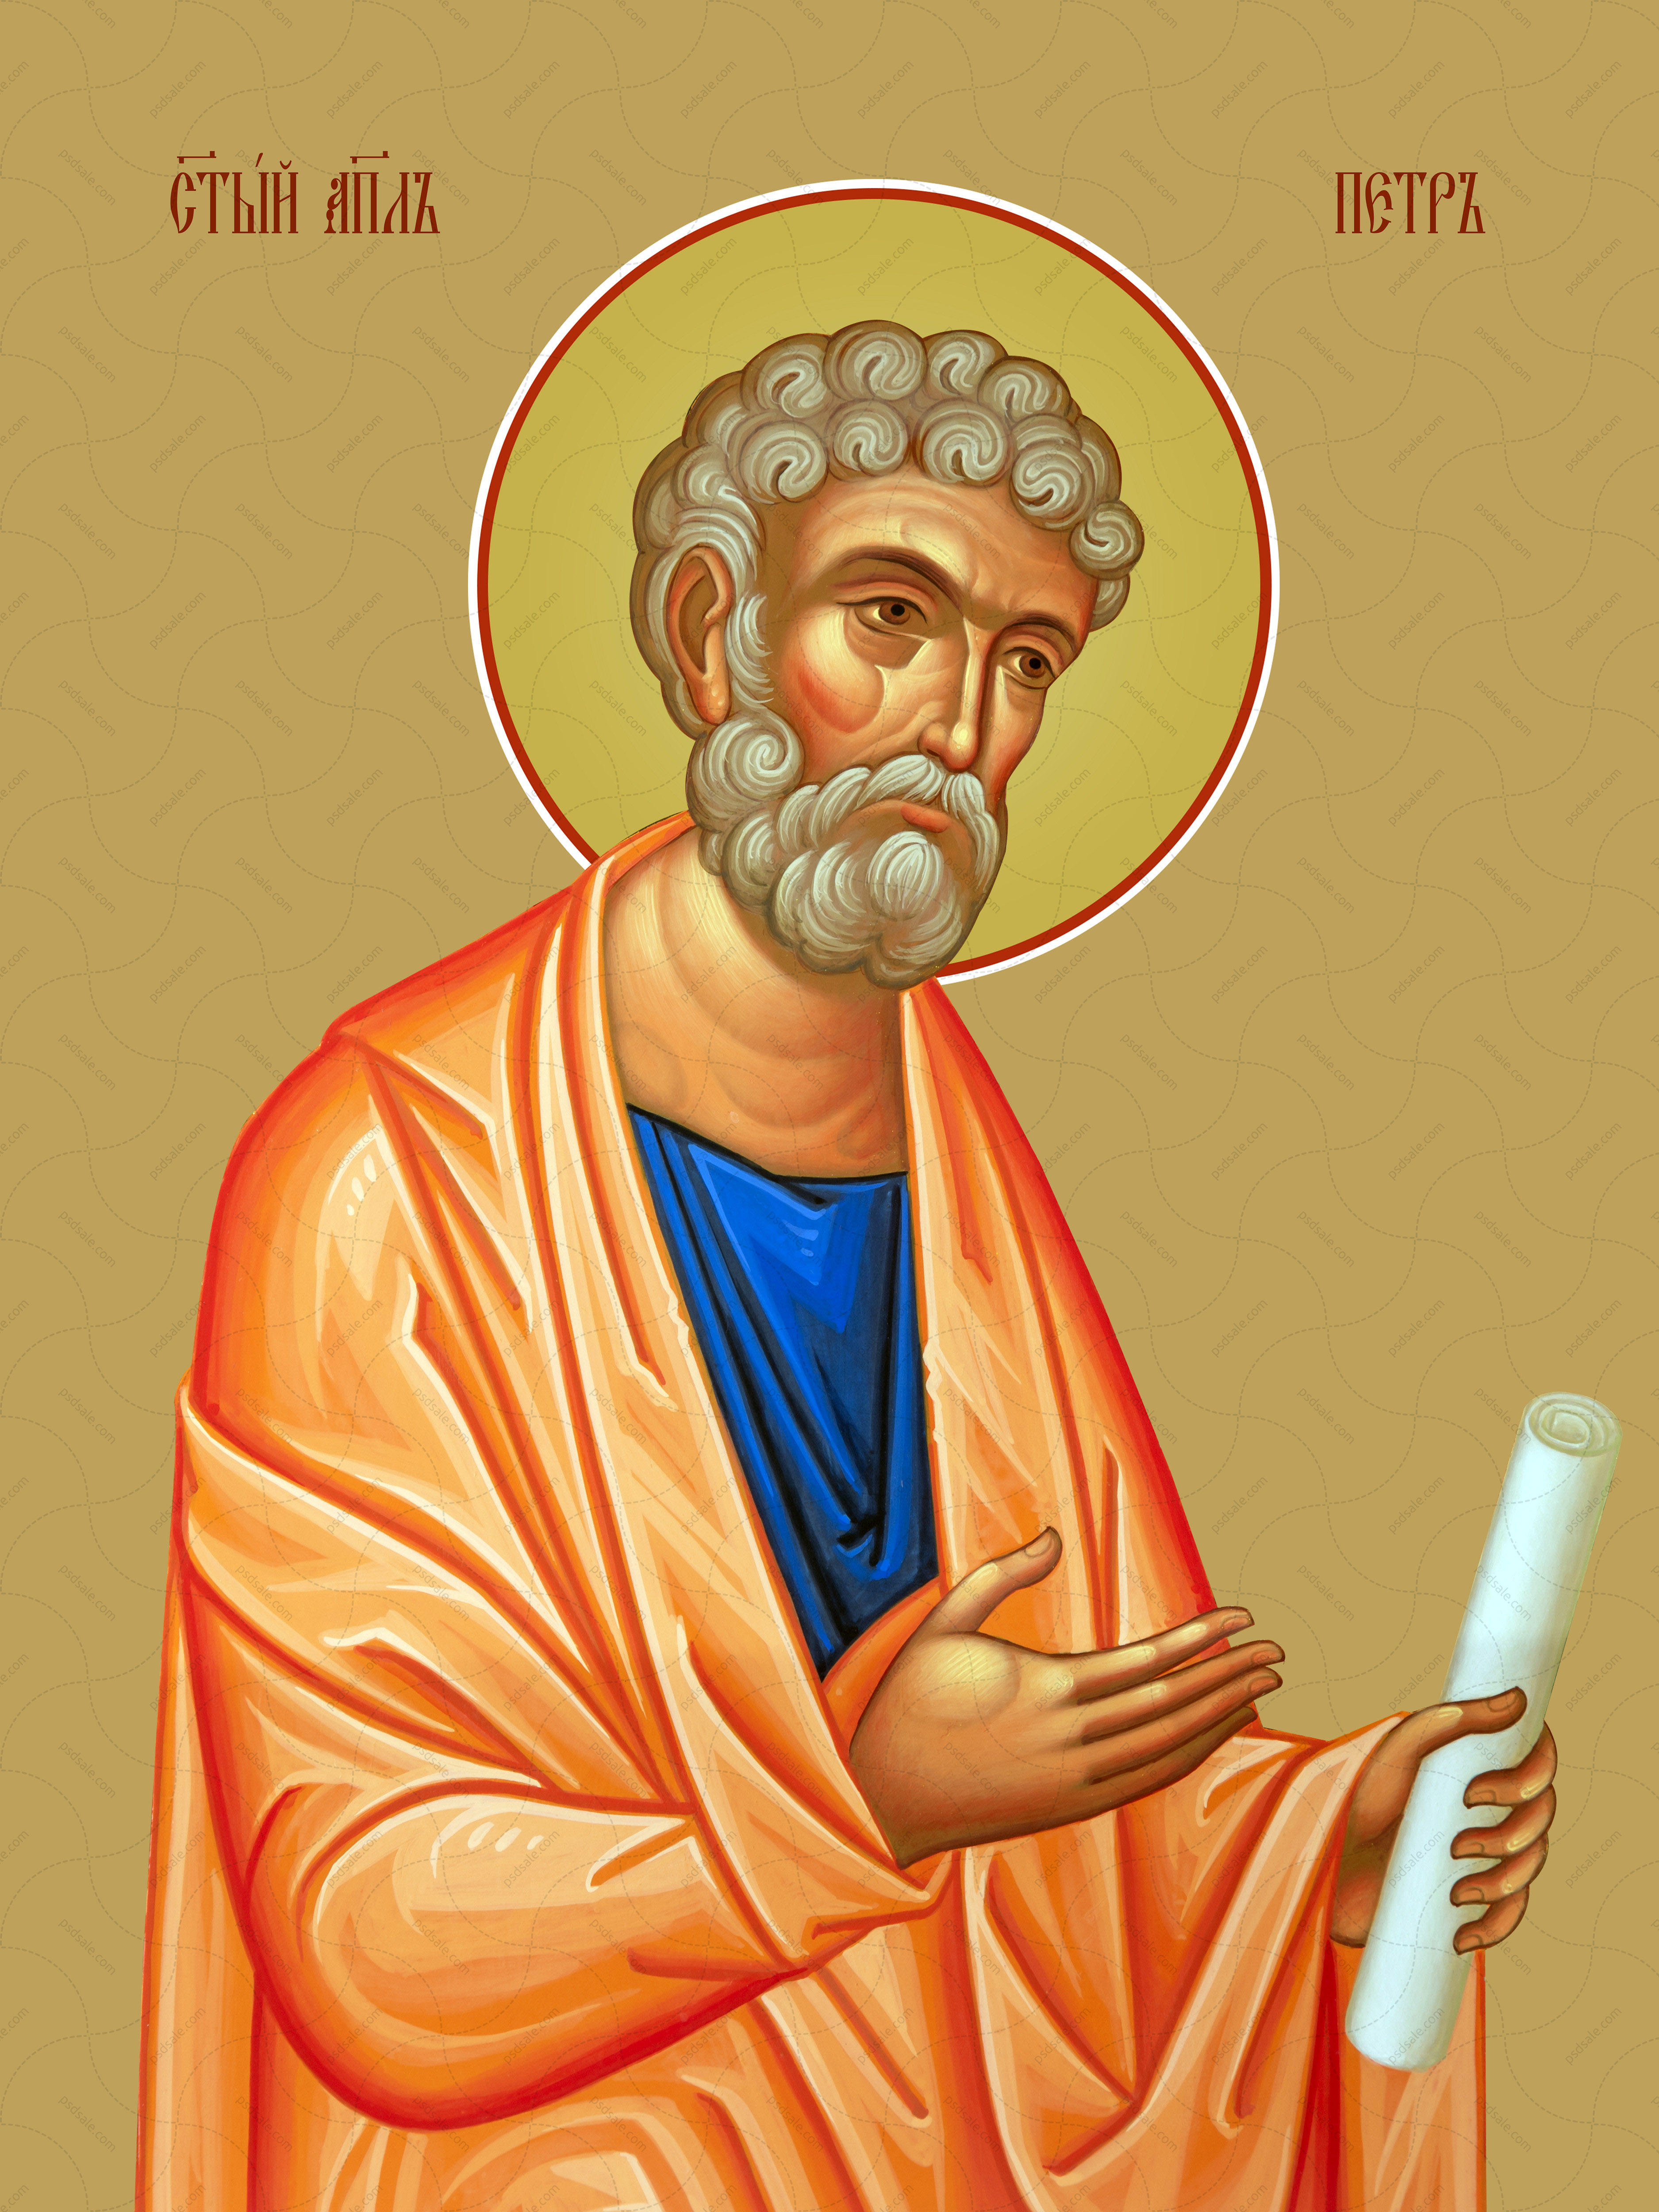 Петр, святой апостол